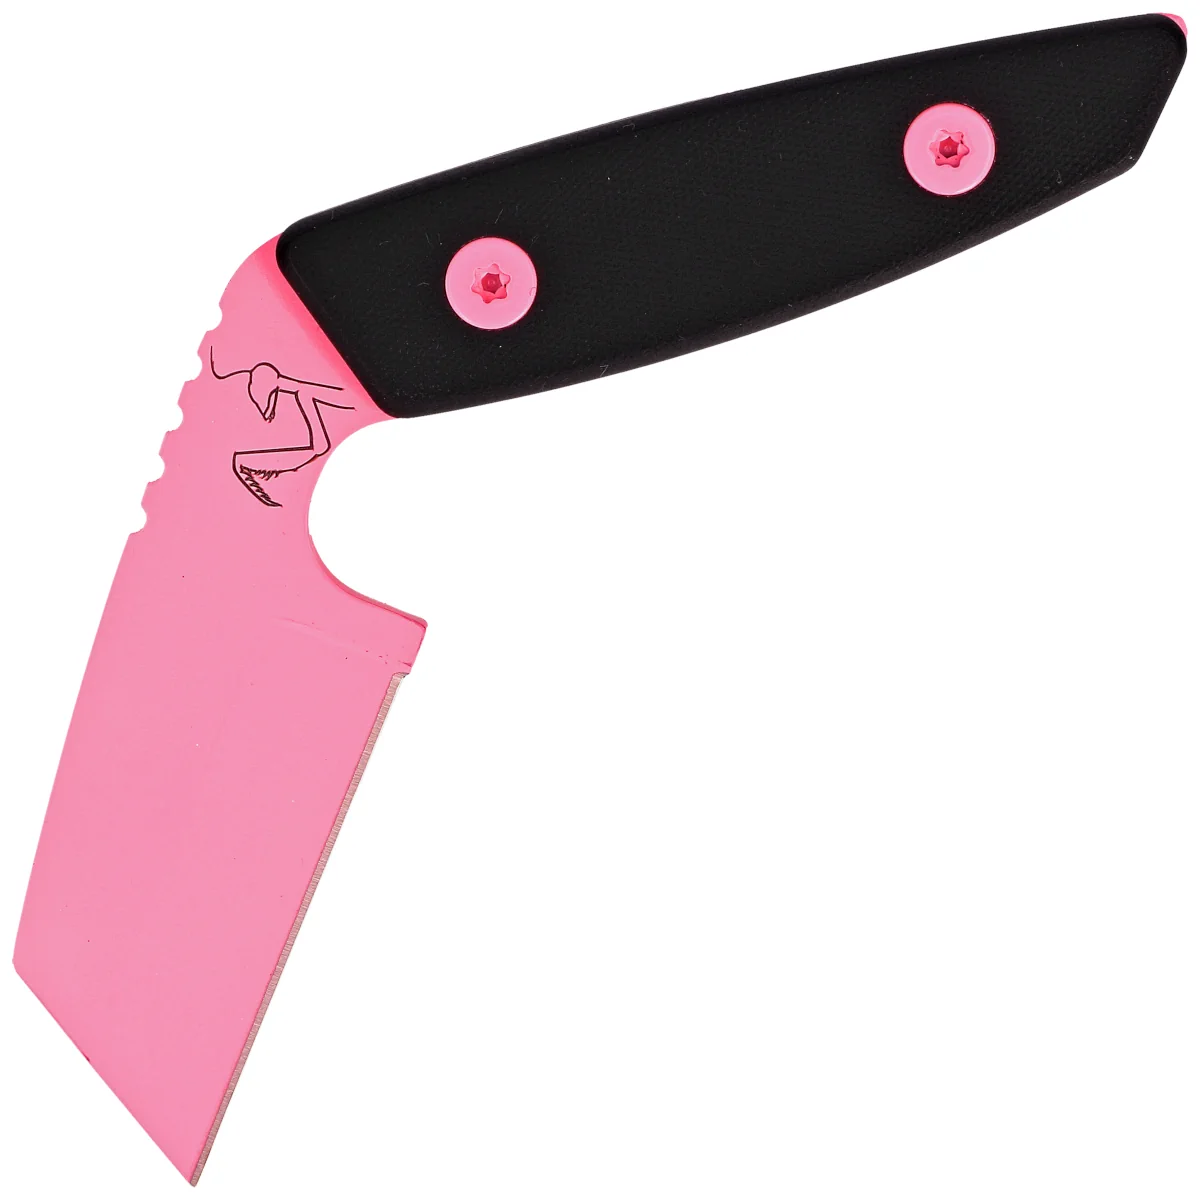 Turq Gear Mantis Black G10 Cubic HW Pink, Cerakote Pink Sleipner